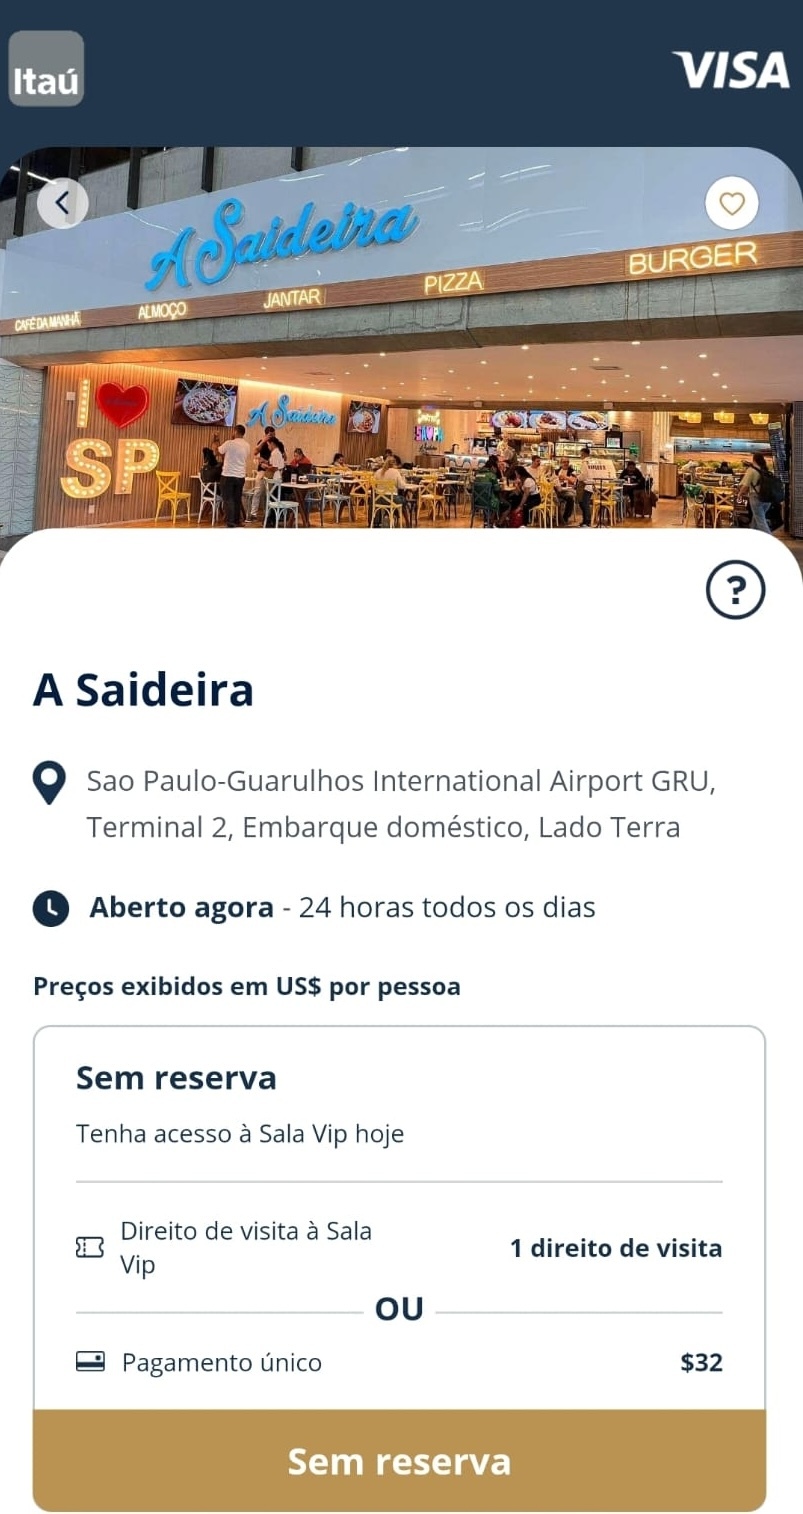 9 opcoes para comer de graca no Aeroporto de Guarulhos